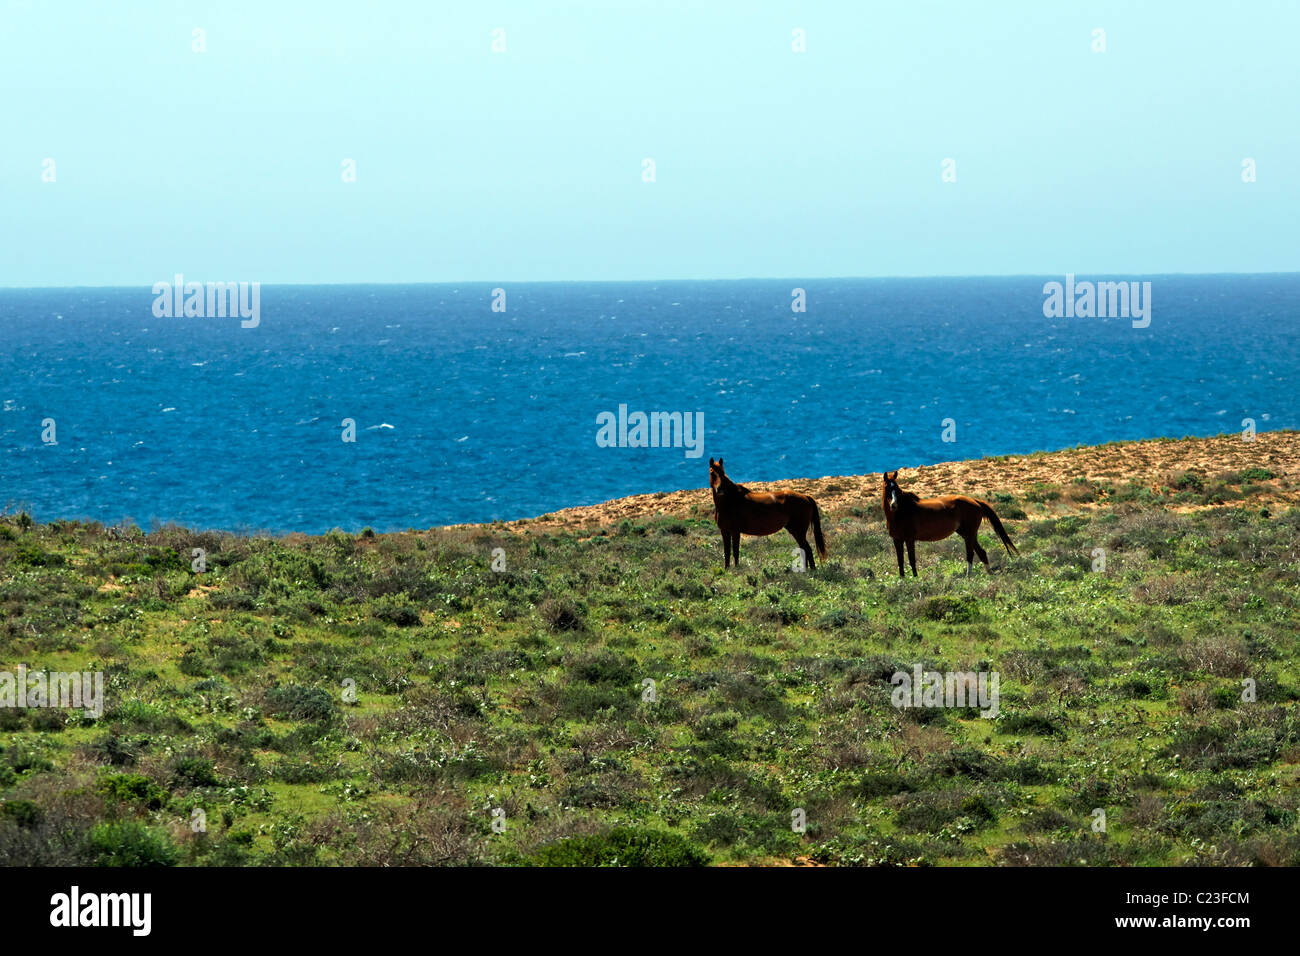 2 caballos en una llanura costera, Quobba Australia Occidental Foto de stock